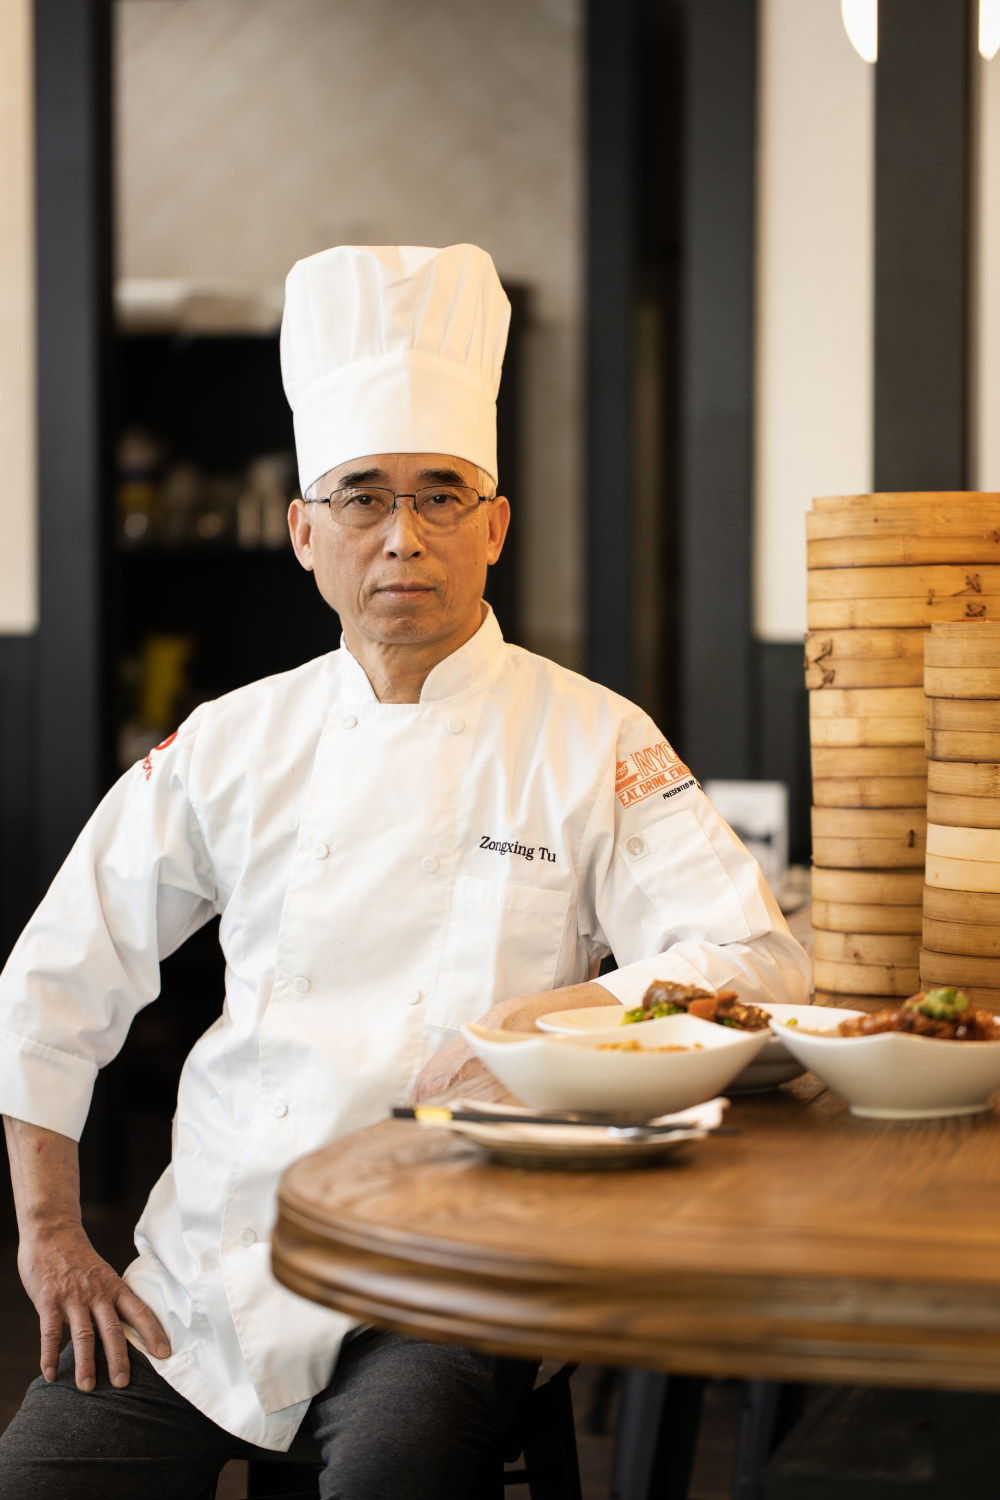 Chef Zongxing Tu